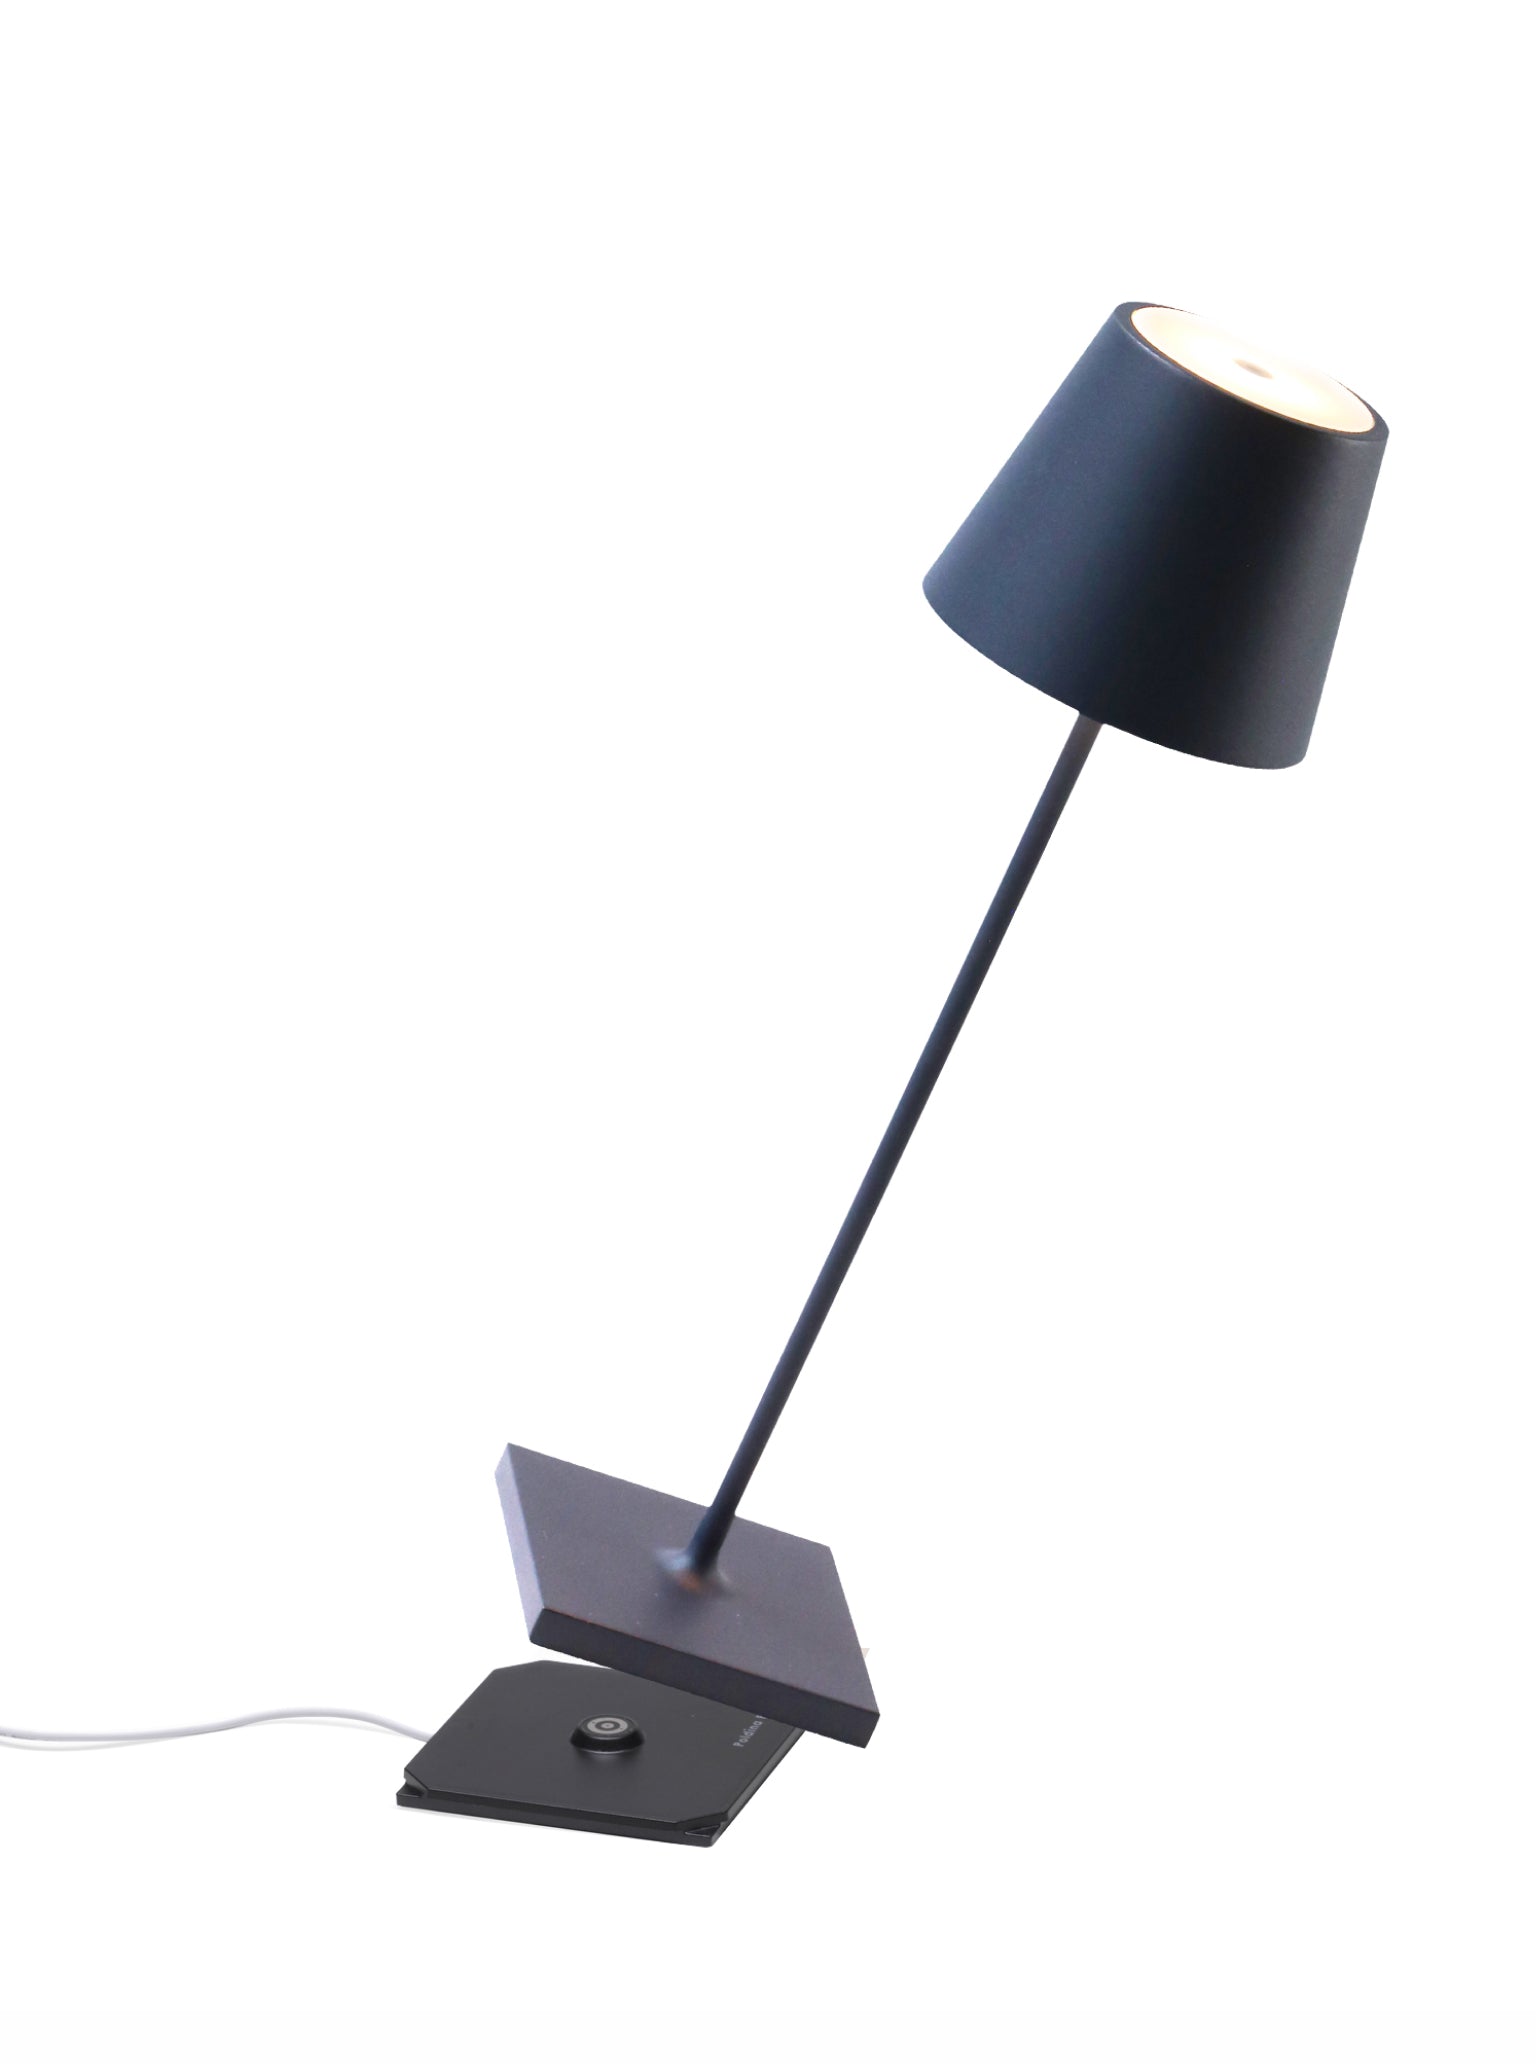 Ailati Lights Lampada Poldina Pro XXL lampada da terra Ailati Lights a  370,88 € vendita online al miglior prezzo - LampCommerce